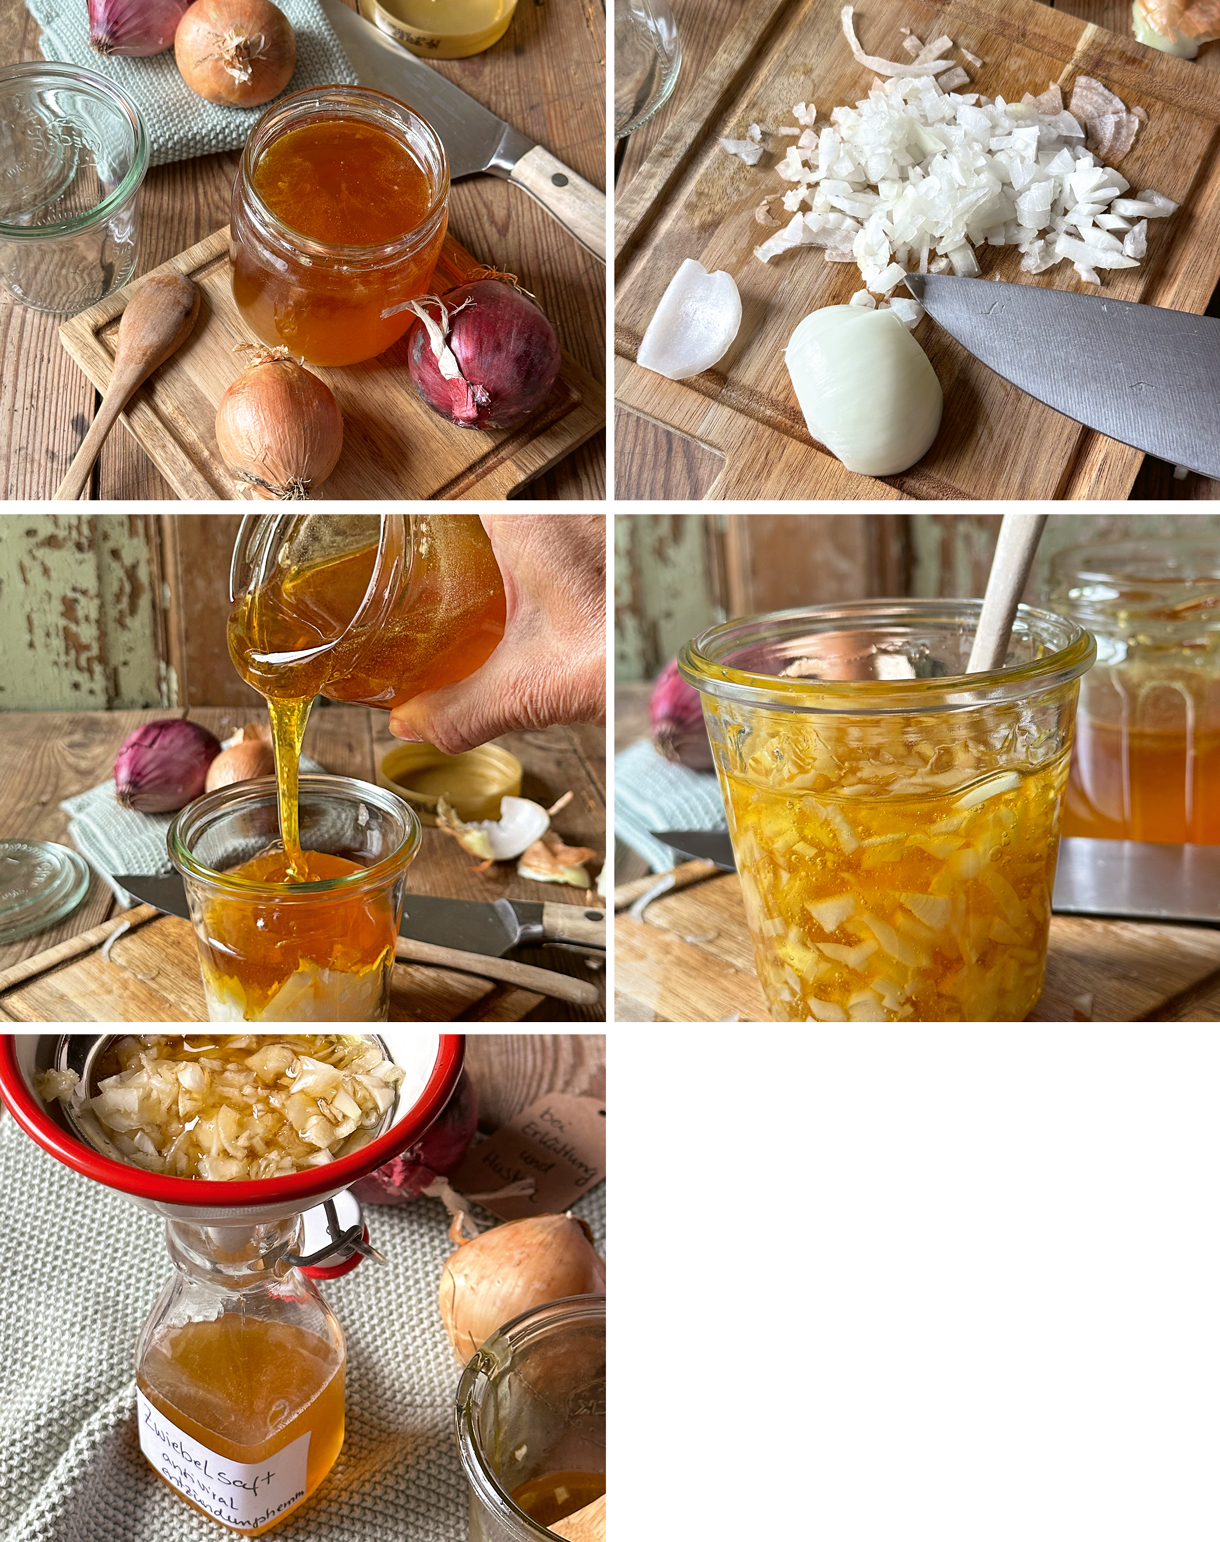 Man sieht 5 Bilder die Schritt für Schritt, die im Text erläuterte Zubereitung von Zwiebelsaft, zeigen.